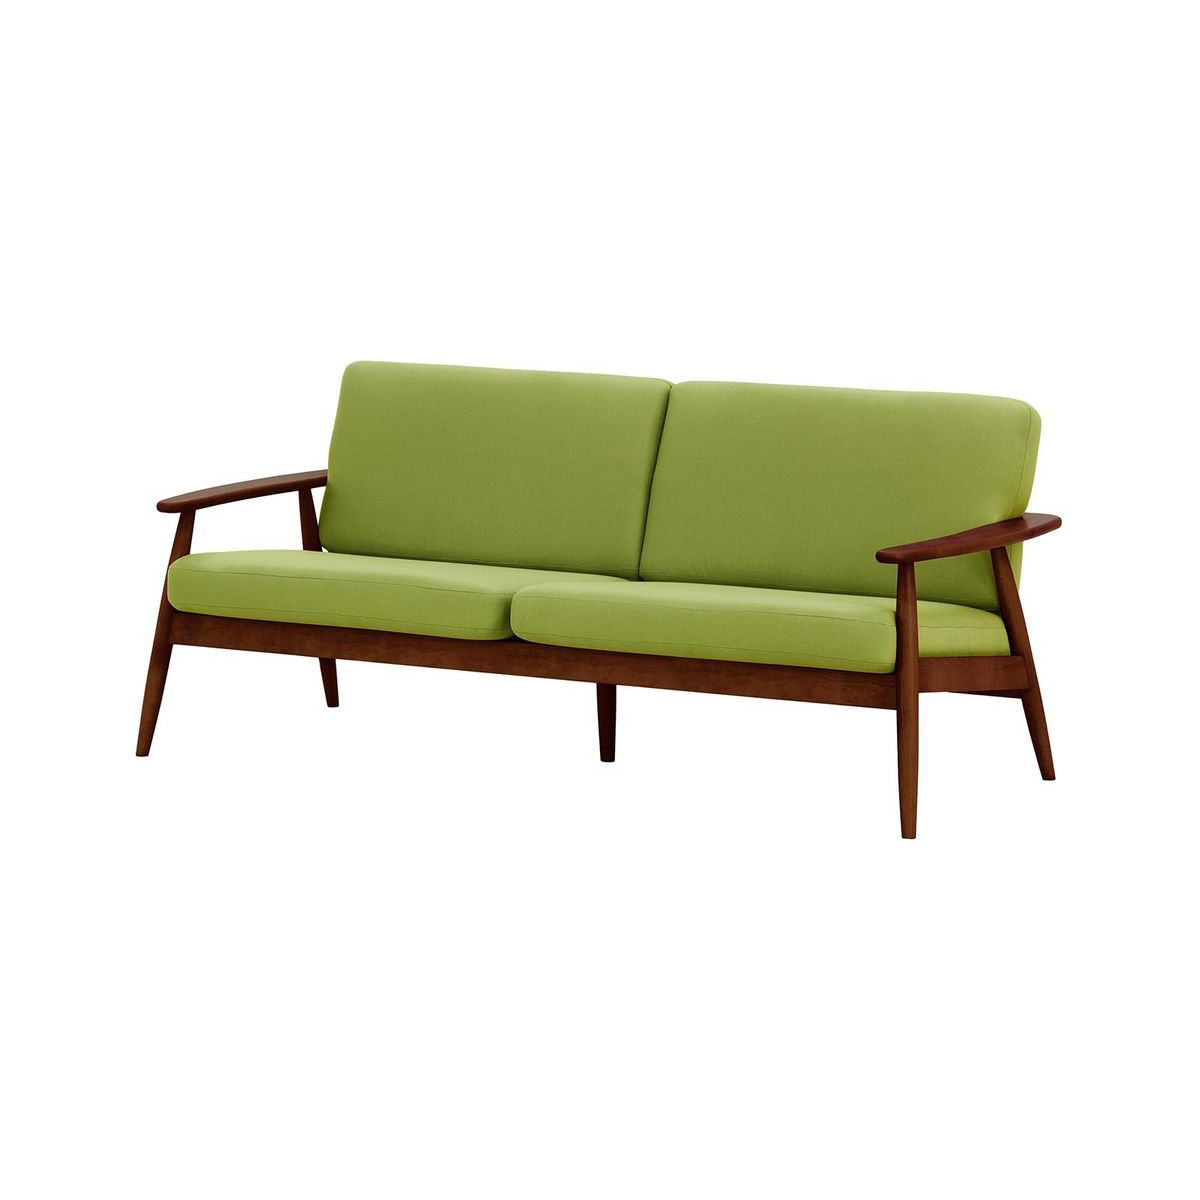 Demure Aqua 3 Seater Garden Sofa, green, Leg colour: 8007 dark oak - image 1